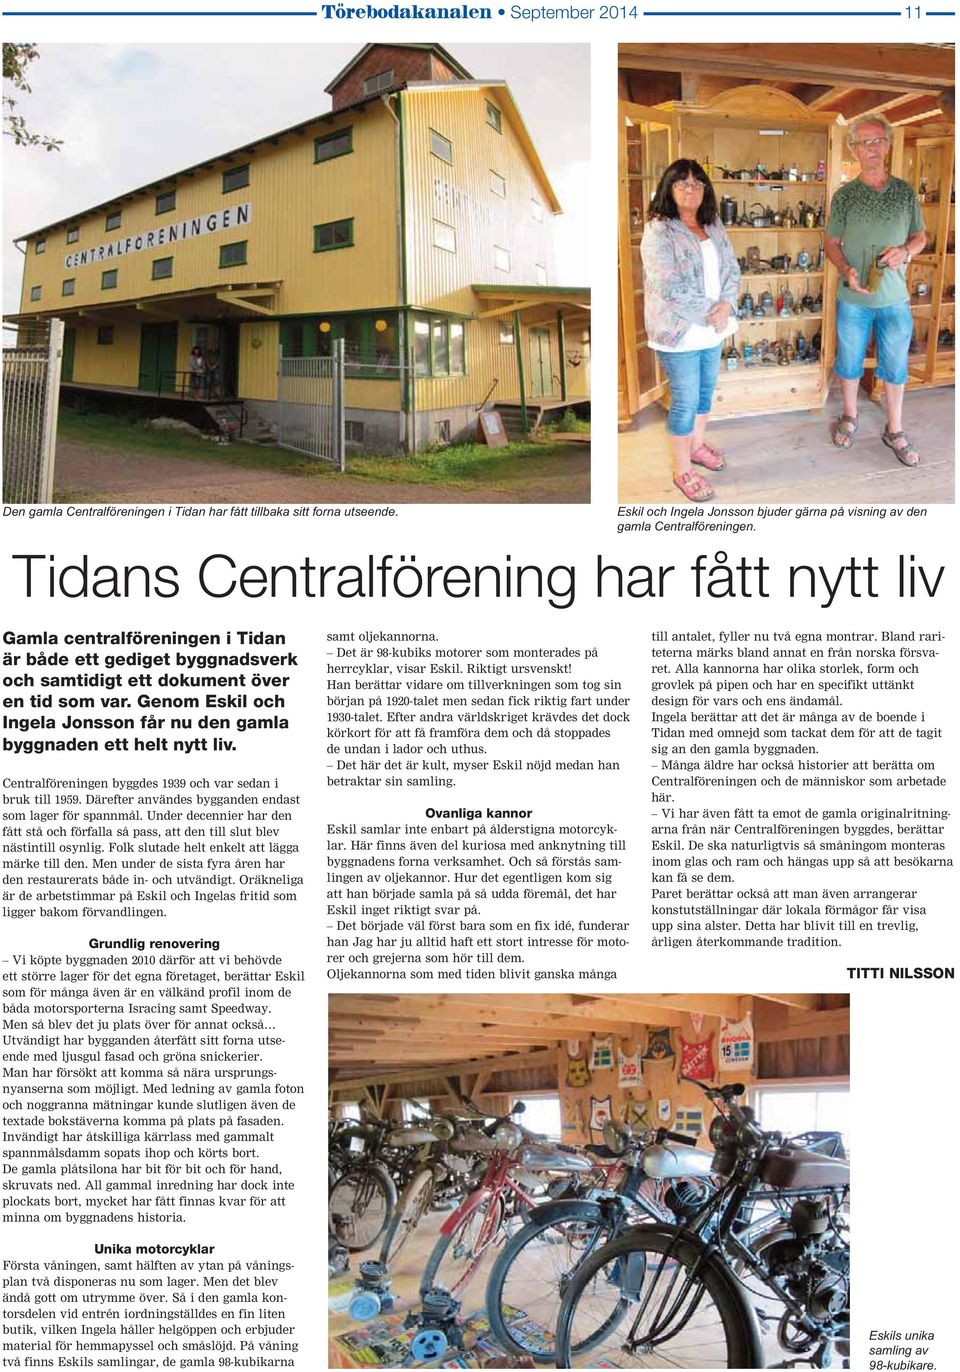 Genom Eskil och Ingela Jonsson får nu den gamla byggnaden ett helt nytt liv. Centralföreningen byggdes 1939 och var sedan i bruk till 1959. Därefter användes bygganden endast som lager för spannmål.